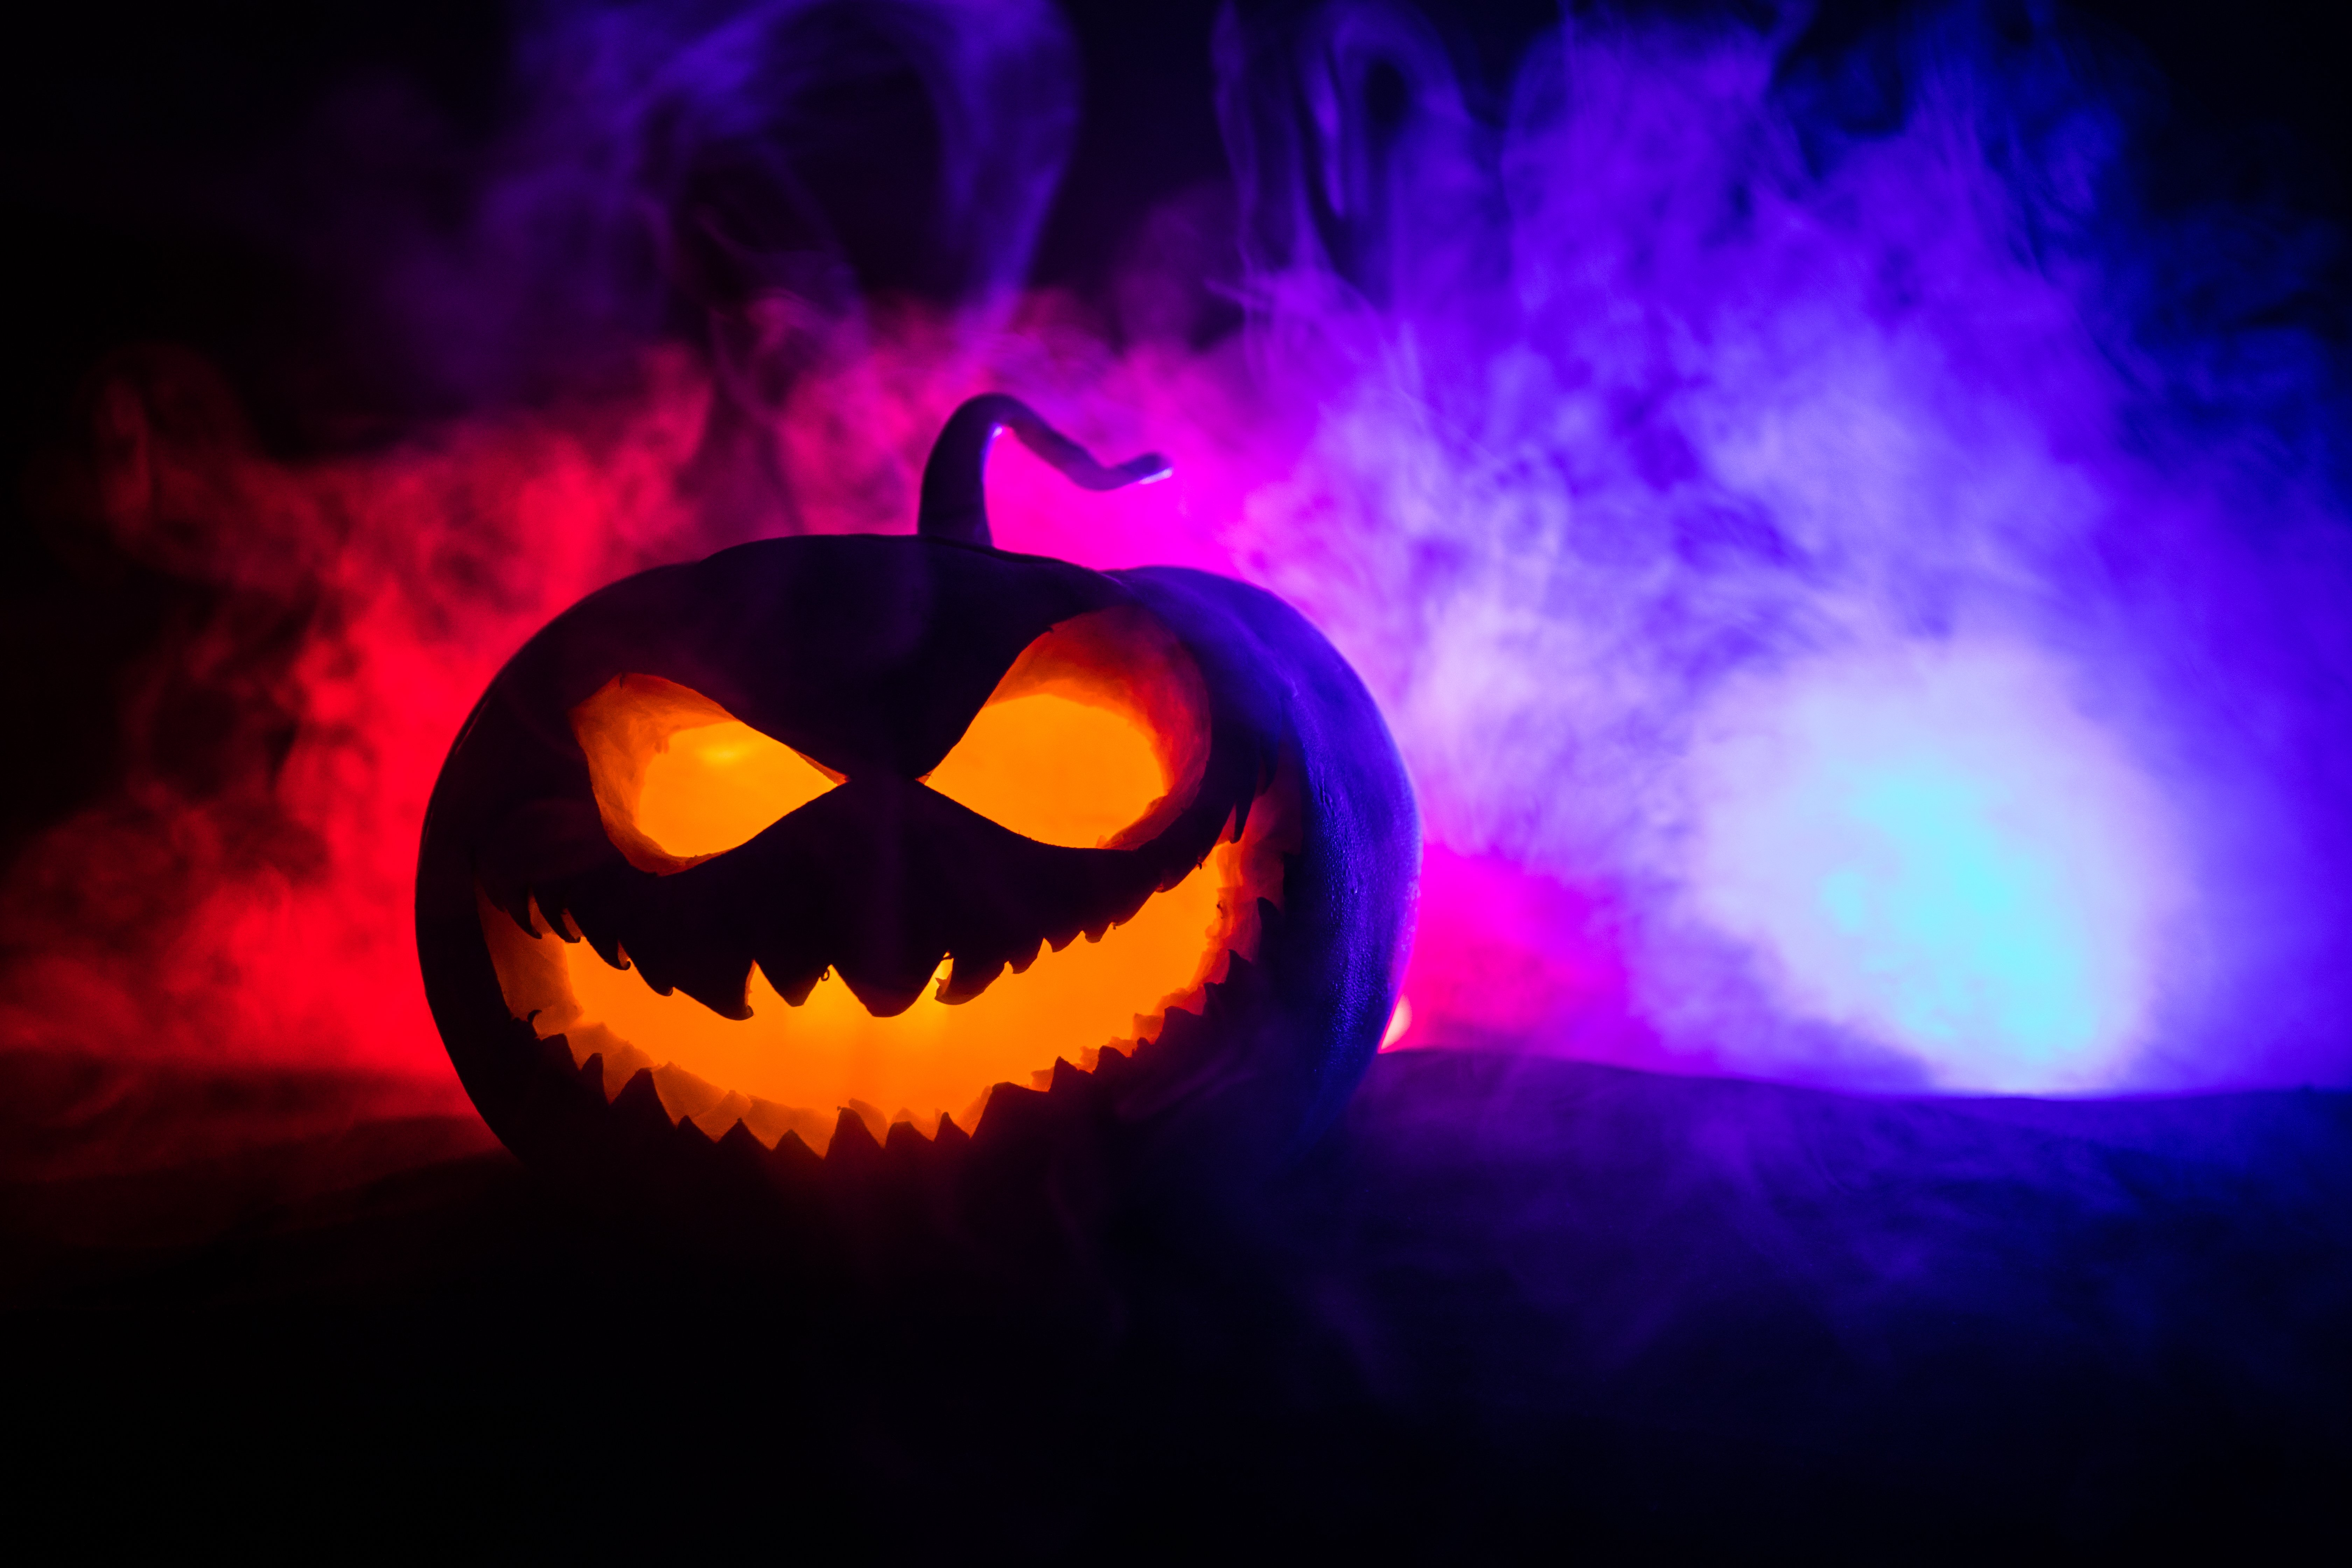 A Pumpkin in Spooky Light